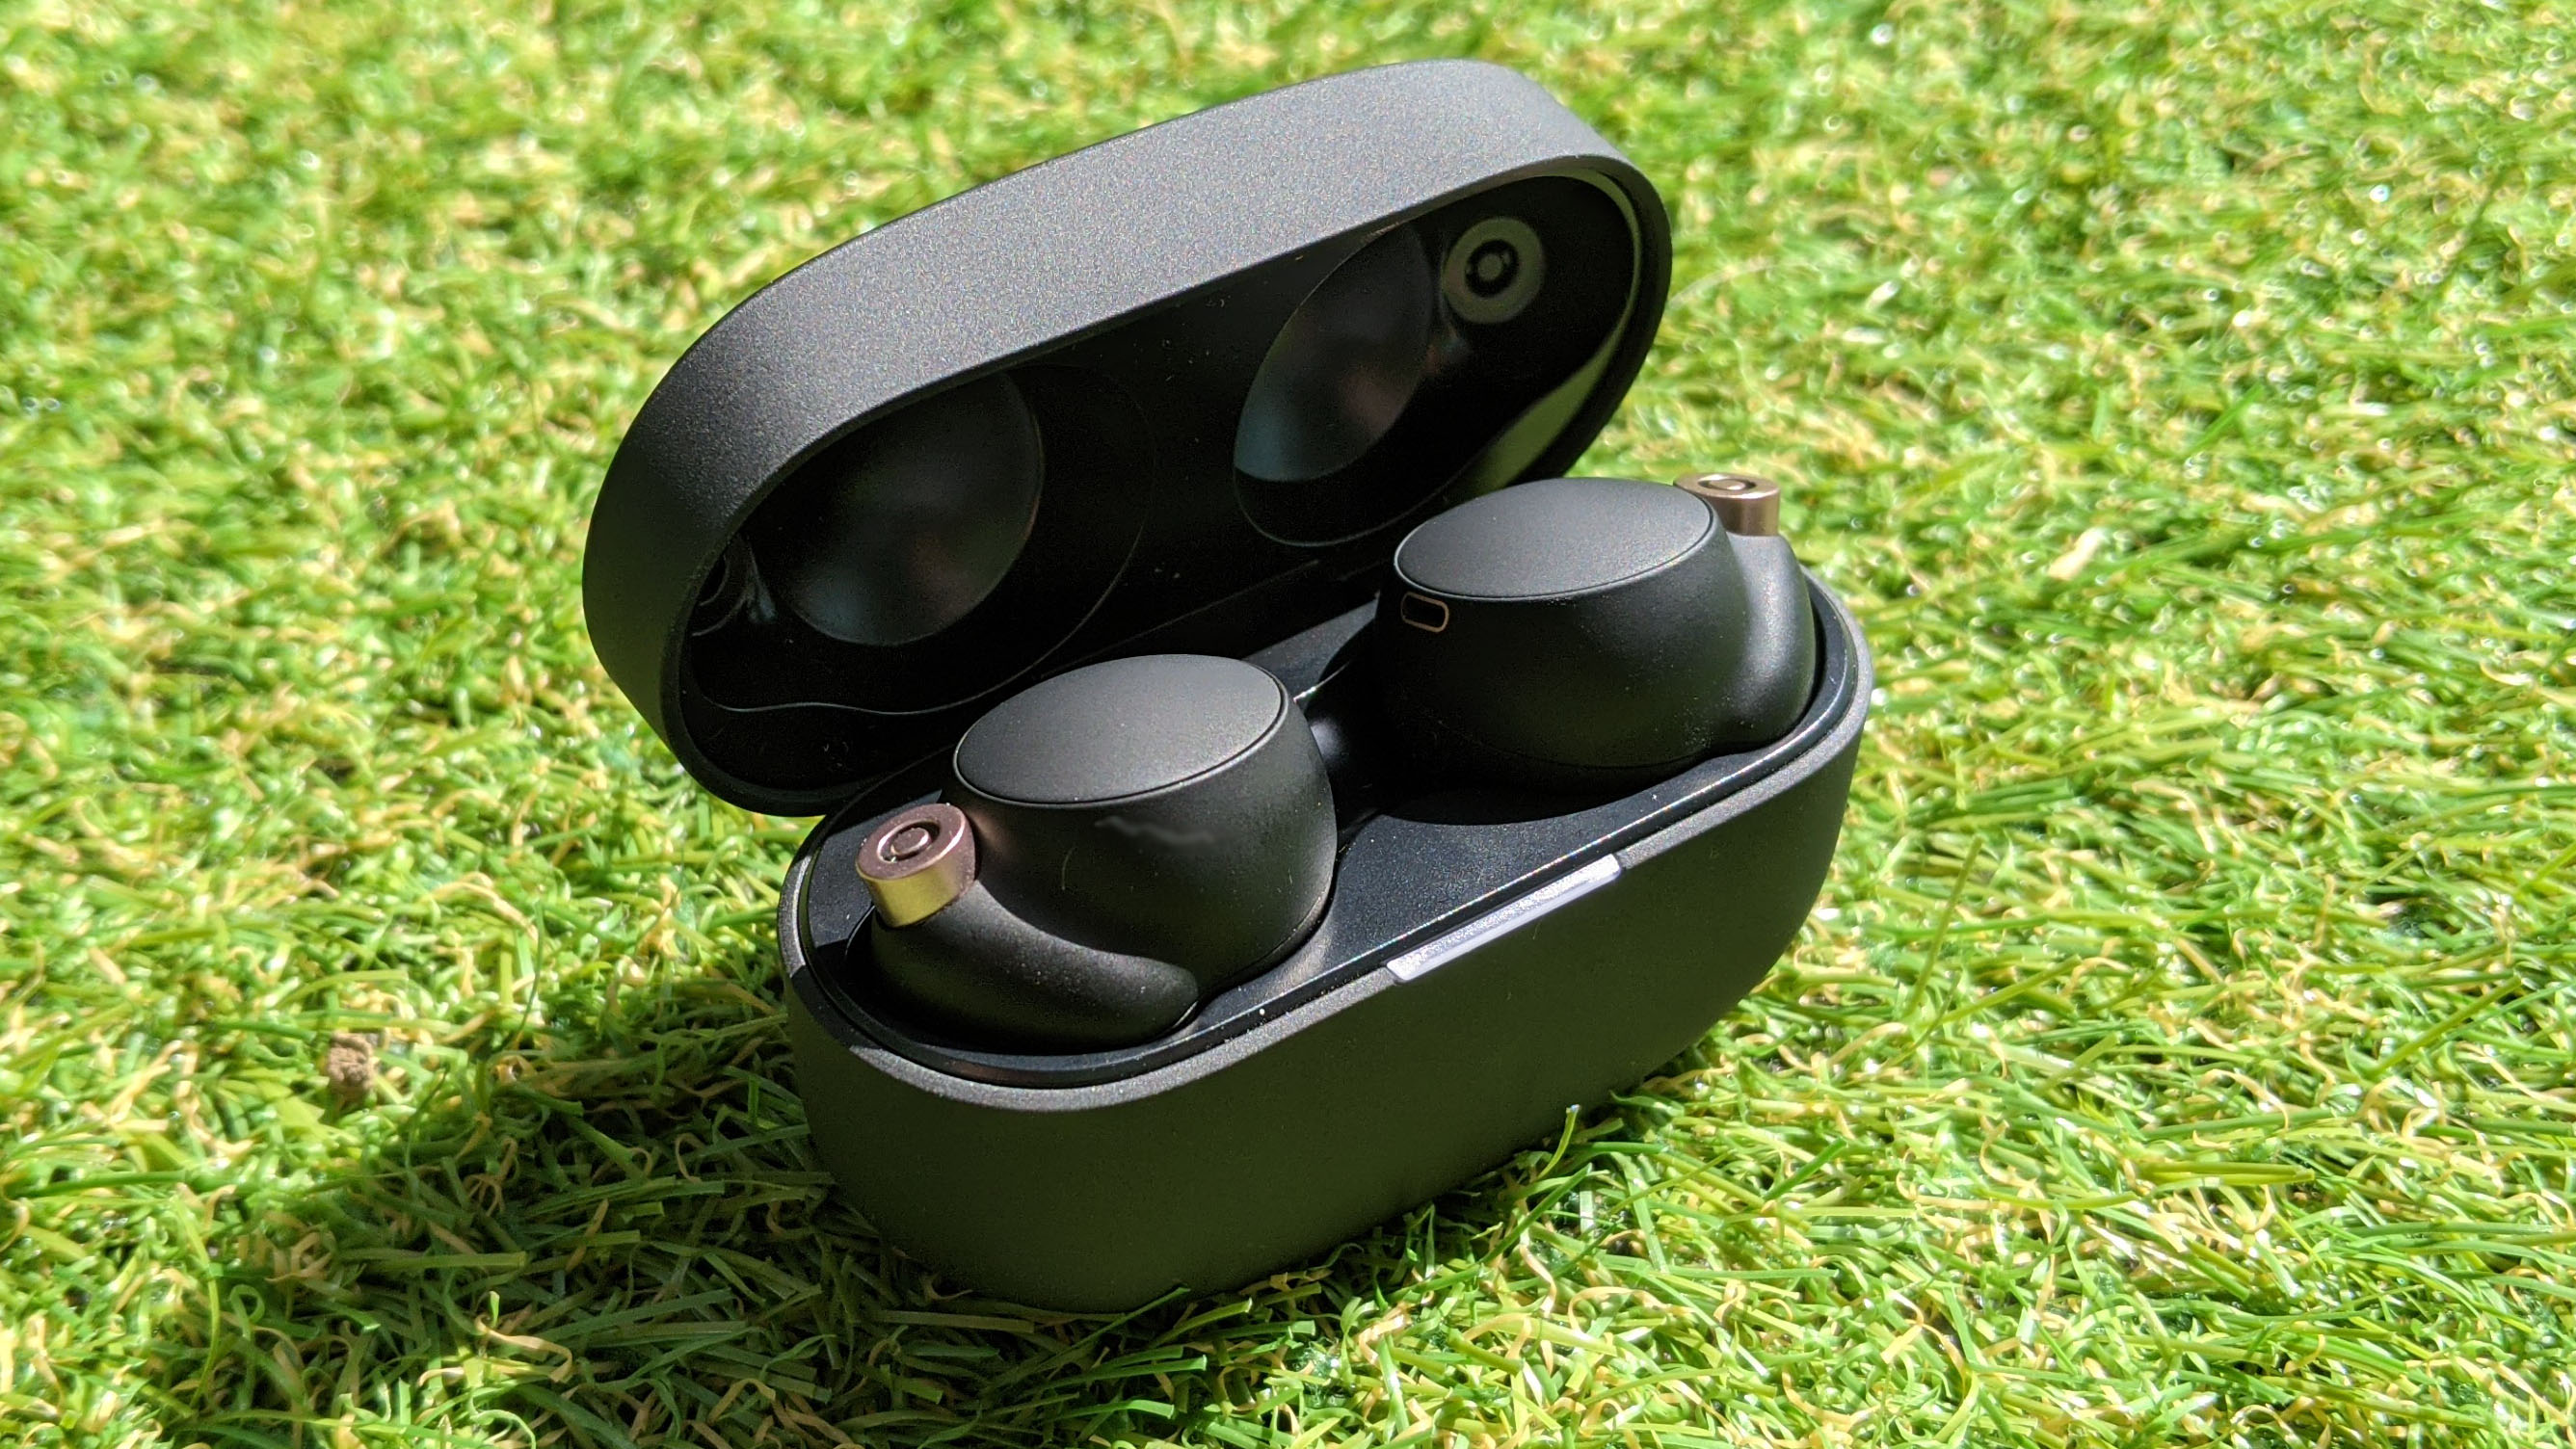 Sony wf- Настоящие беспроводные наушники 1000xm4 черного цвета, изображенные в чехле для зарядки на фоне травы